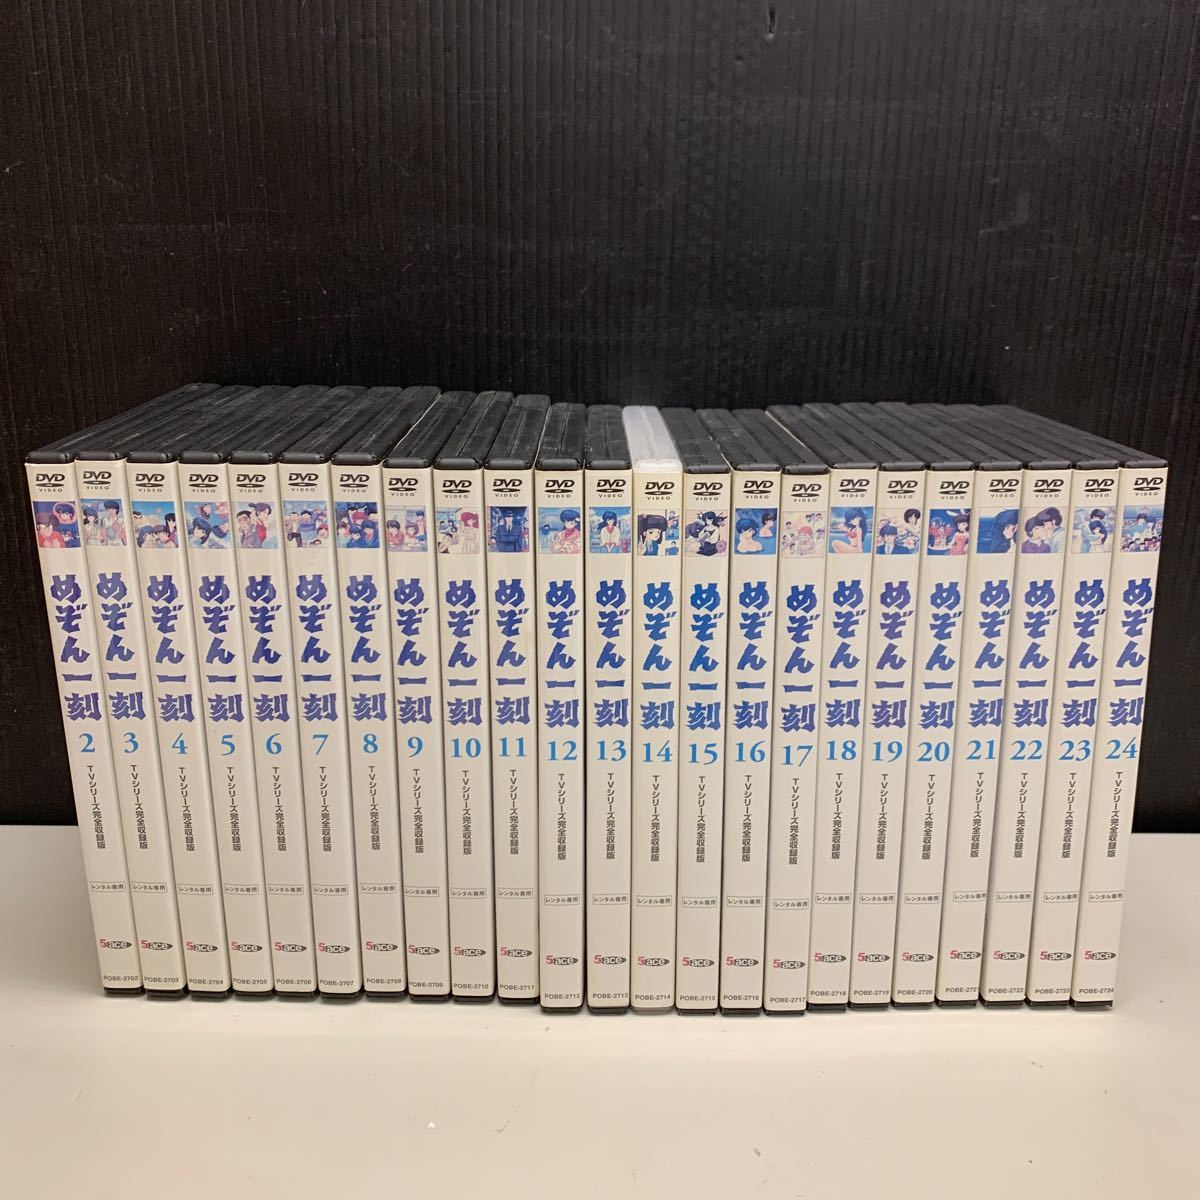 めぞん一刻 TVシリーズ完全収録版 DVD 2-24巻 レンタル専用 セット(ま 